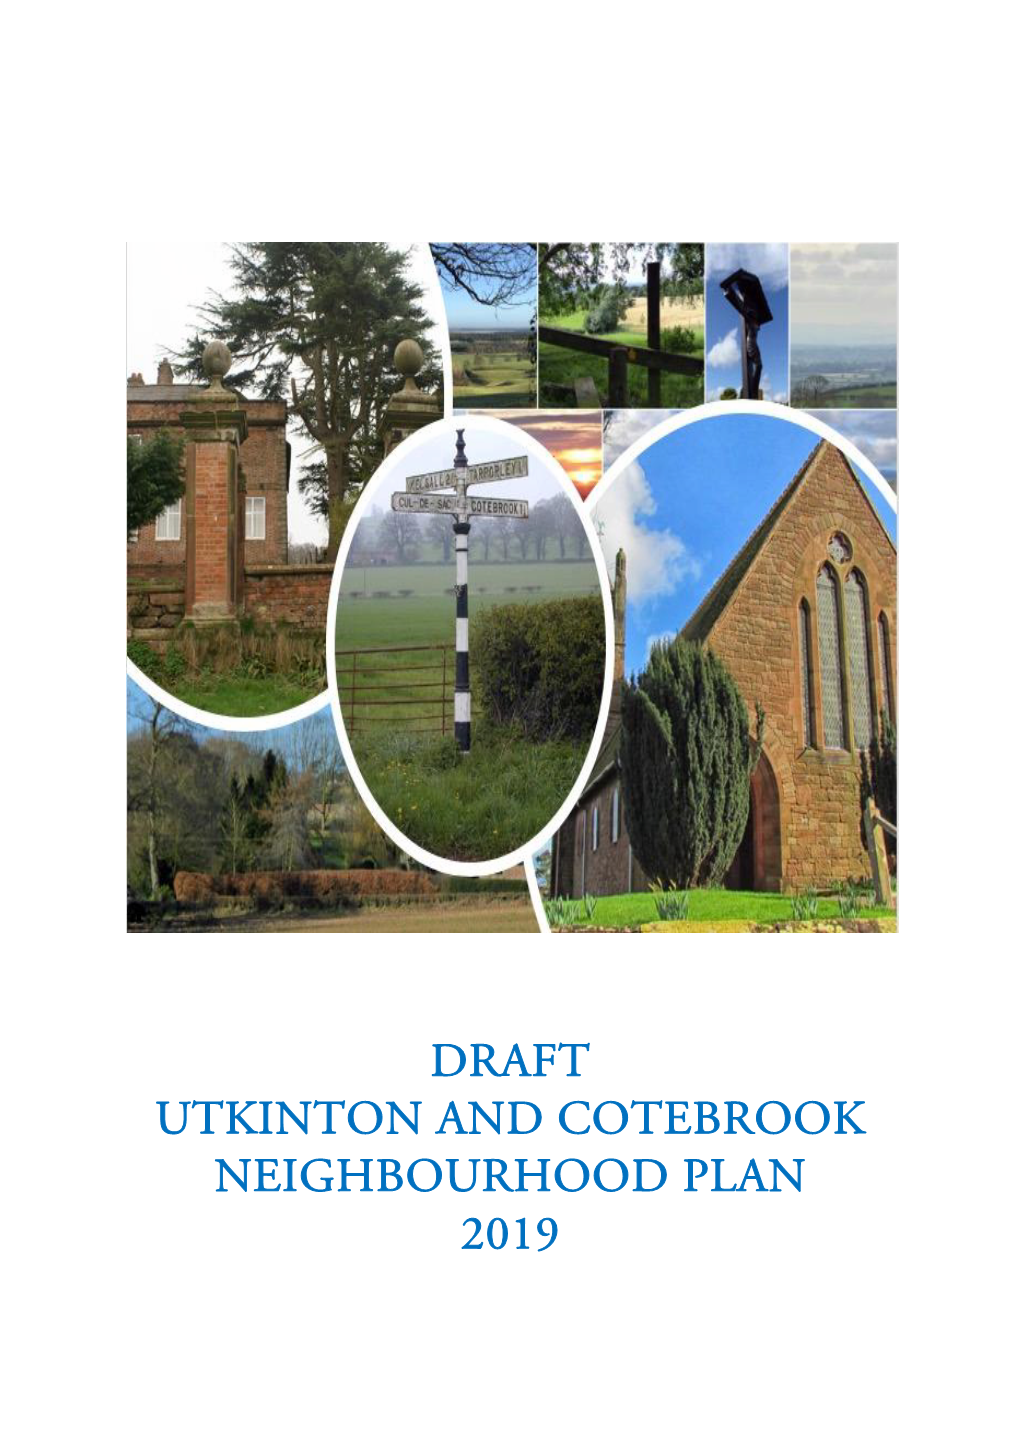 Draft Utkinton and Cotebrook Neighbourhood Plan 2019